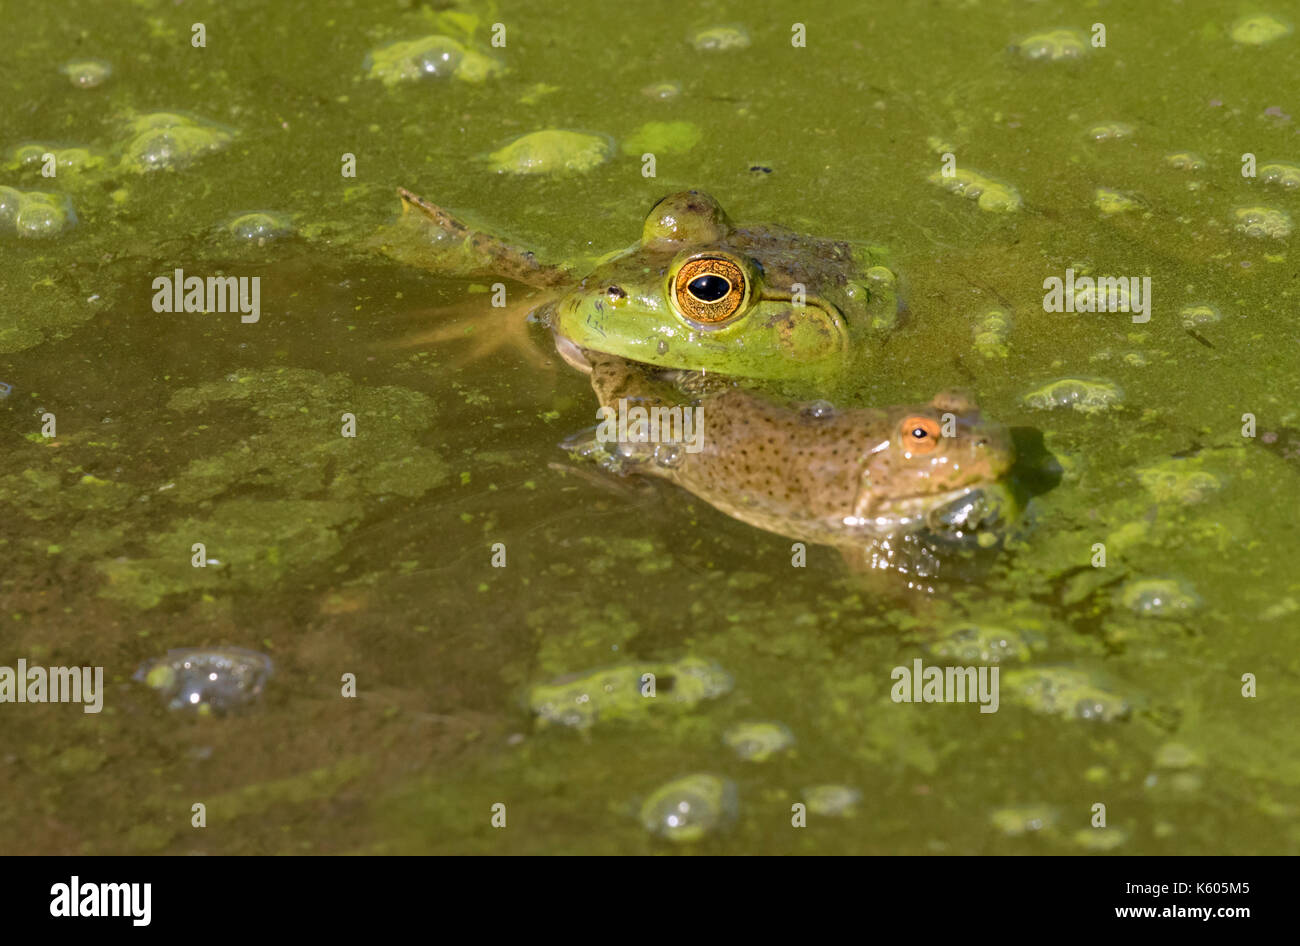 Amerikanische Ochsenfrosch (Lithobates catesbeianus) Angriff auf einen jungen grünen Frosch (Rana clamitans) in einem Wald Sumpf, Ames, Iowa, USA Stockfoto